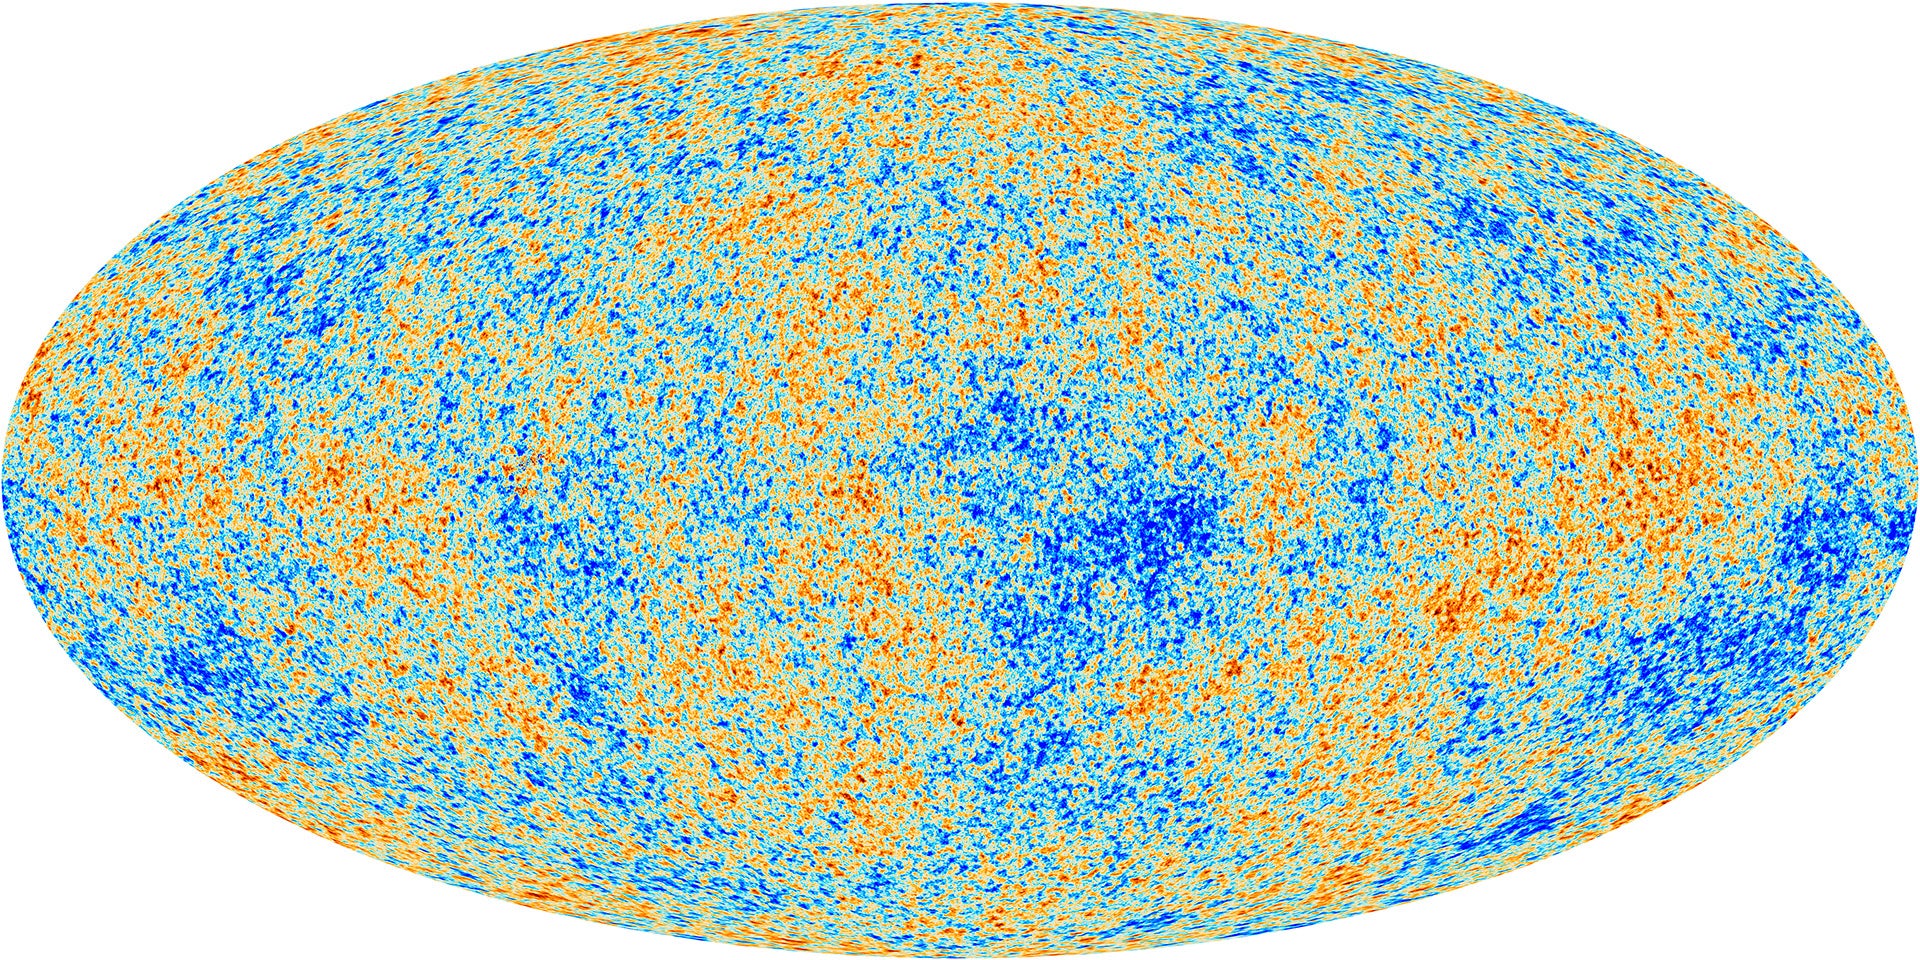 Kosmiczne mikrofalowe tło widziane przez Obserwatorium Plancka Europejskiej Agencji Kosmicznej.